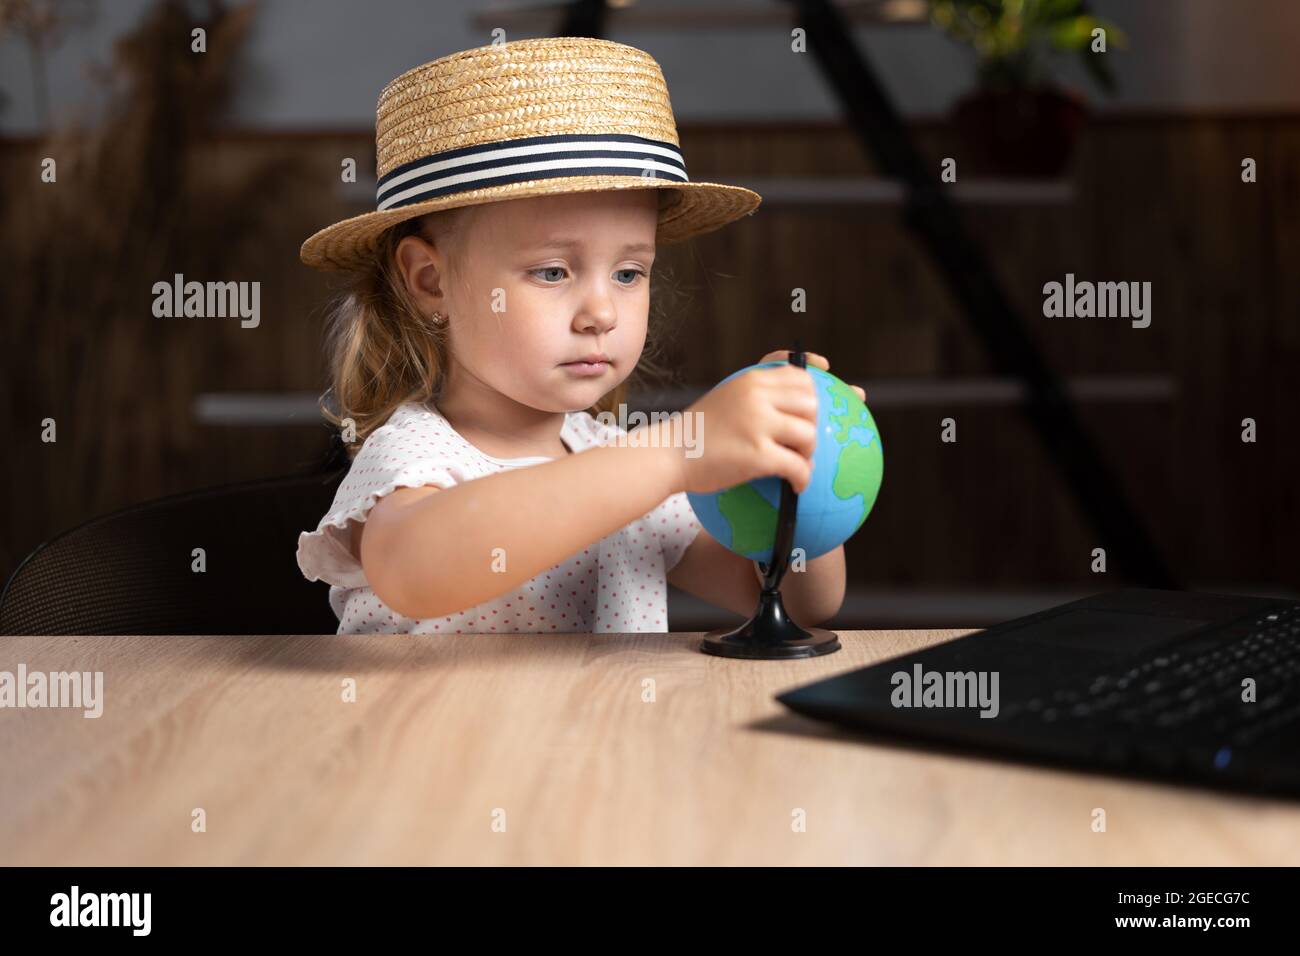 Una studentessa caucasica vestita con un cappello che tiene in mano un globo si siede a casa a un tavolo con un computer portatile. Foto Stock